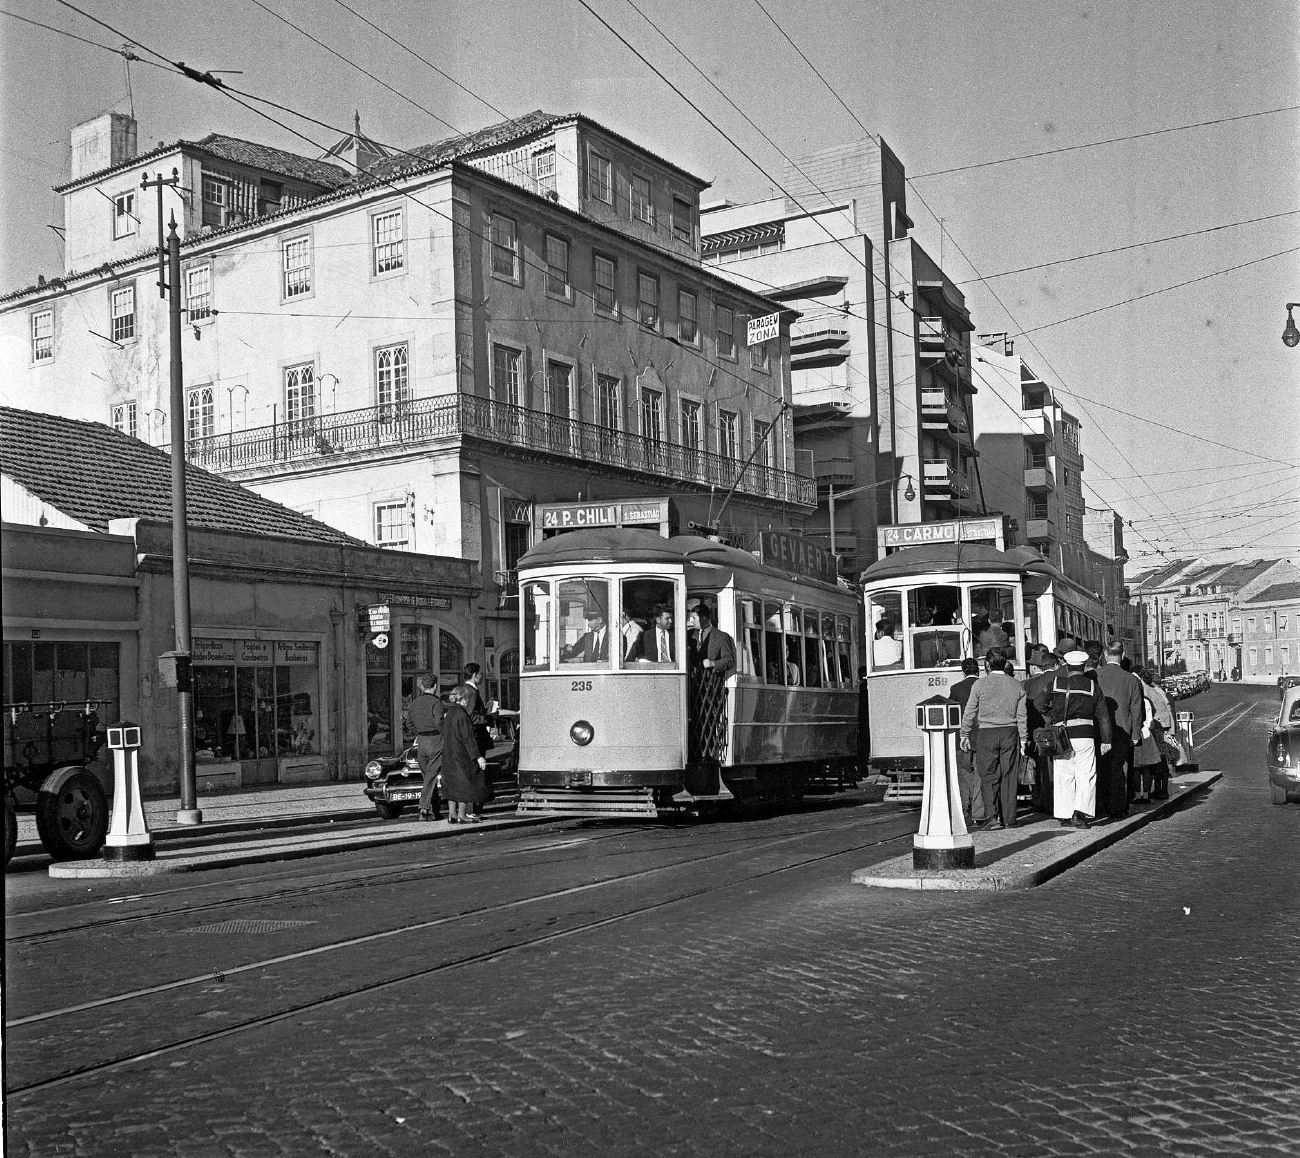 Lissabon, Carris 2-axle motorcar (Standard) # 235; Lissabon — All — Old Photos